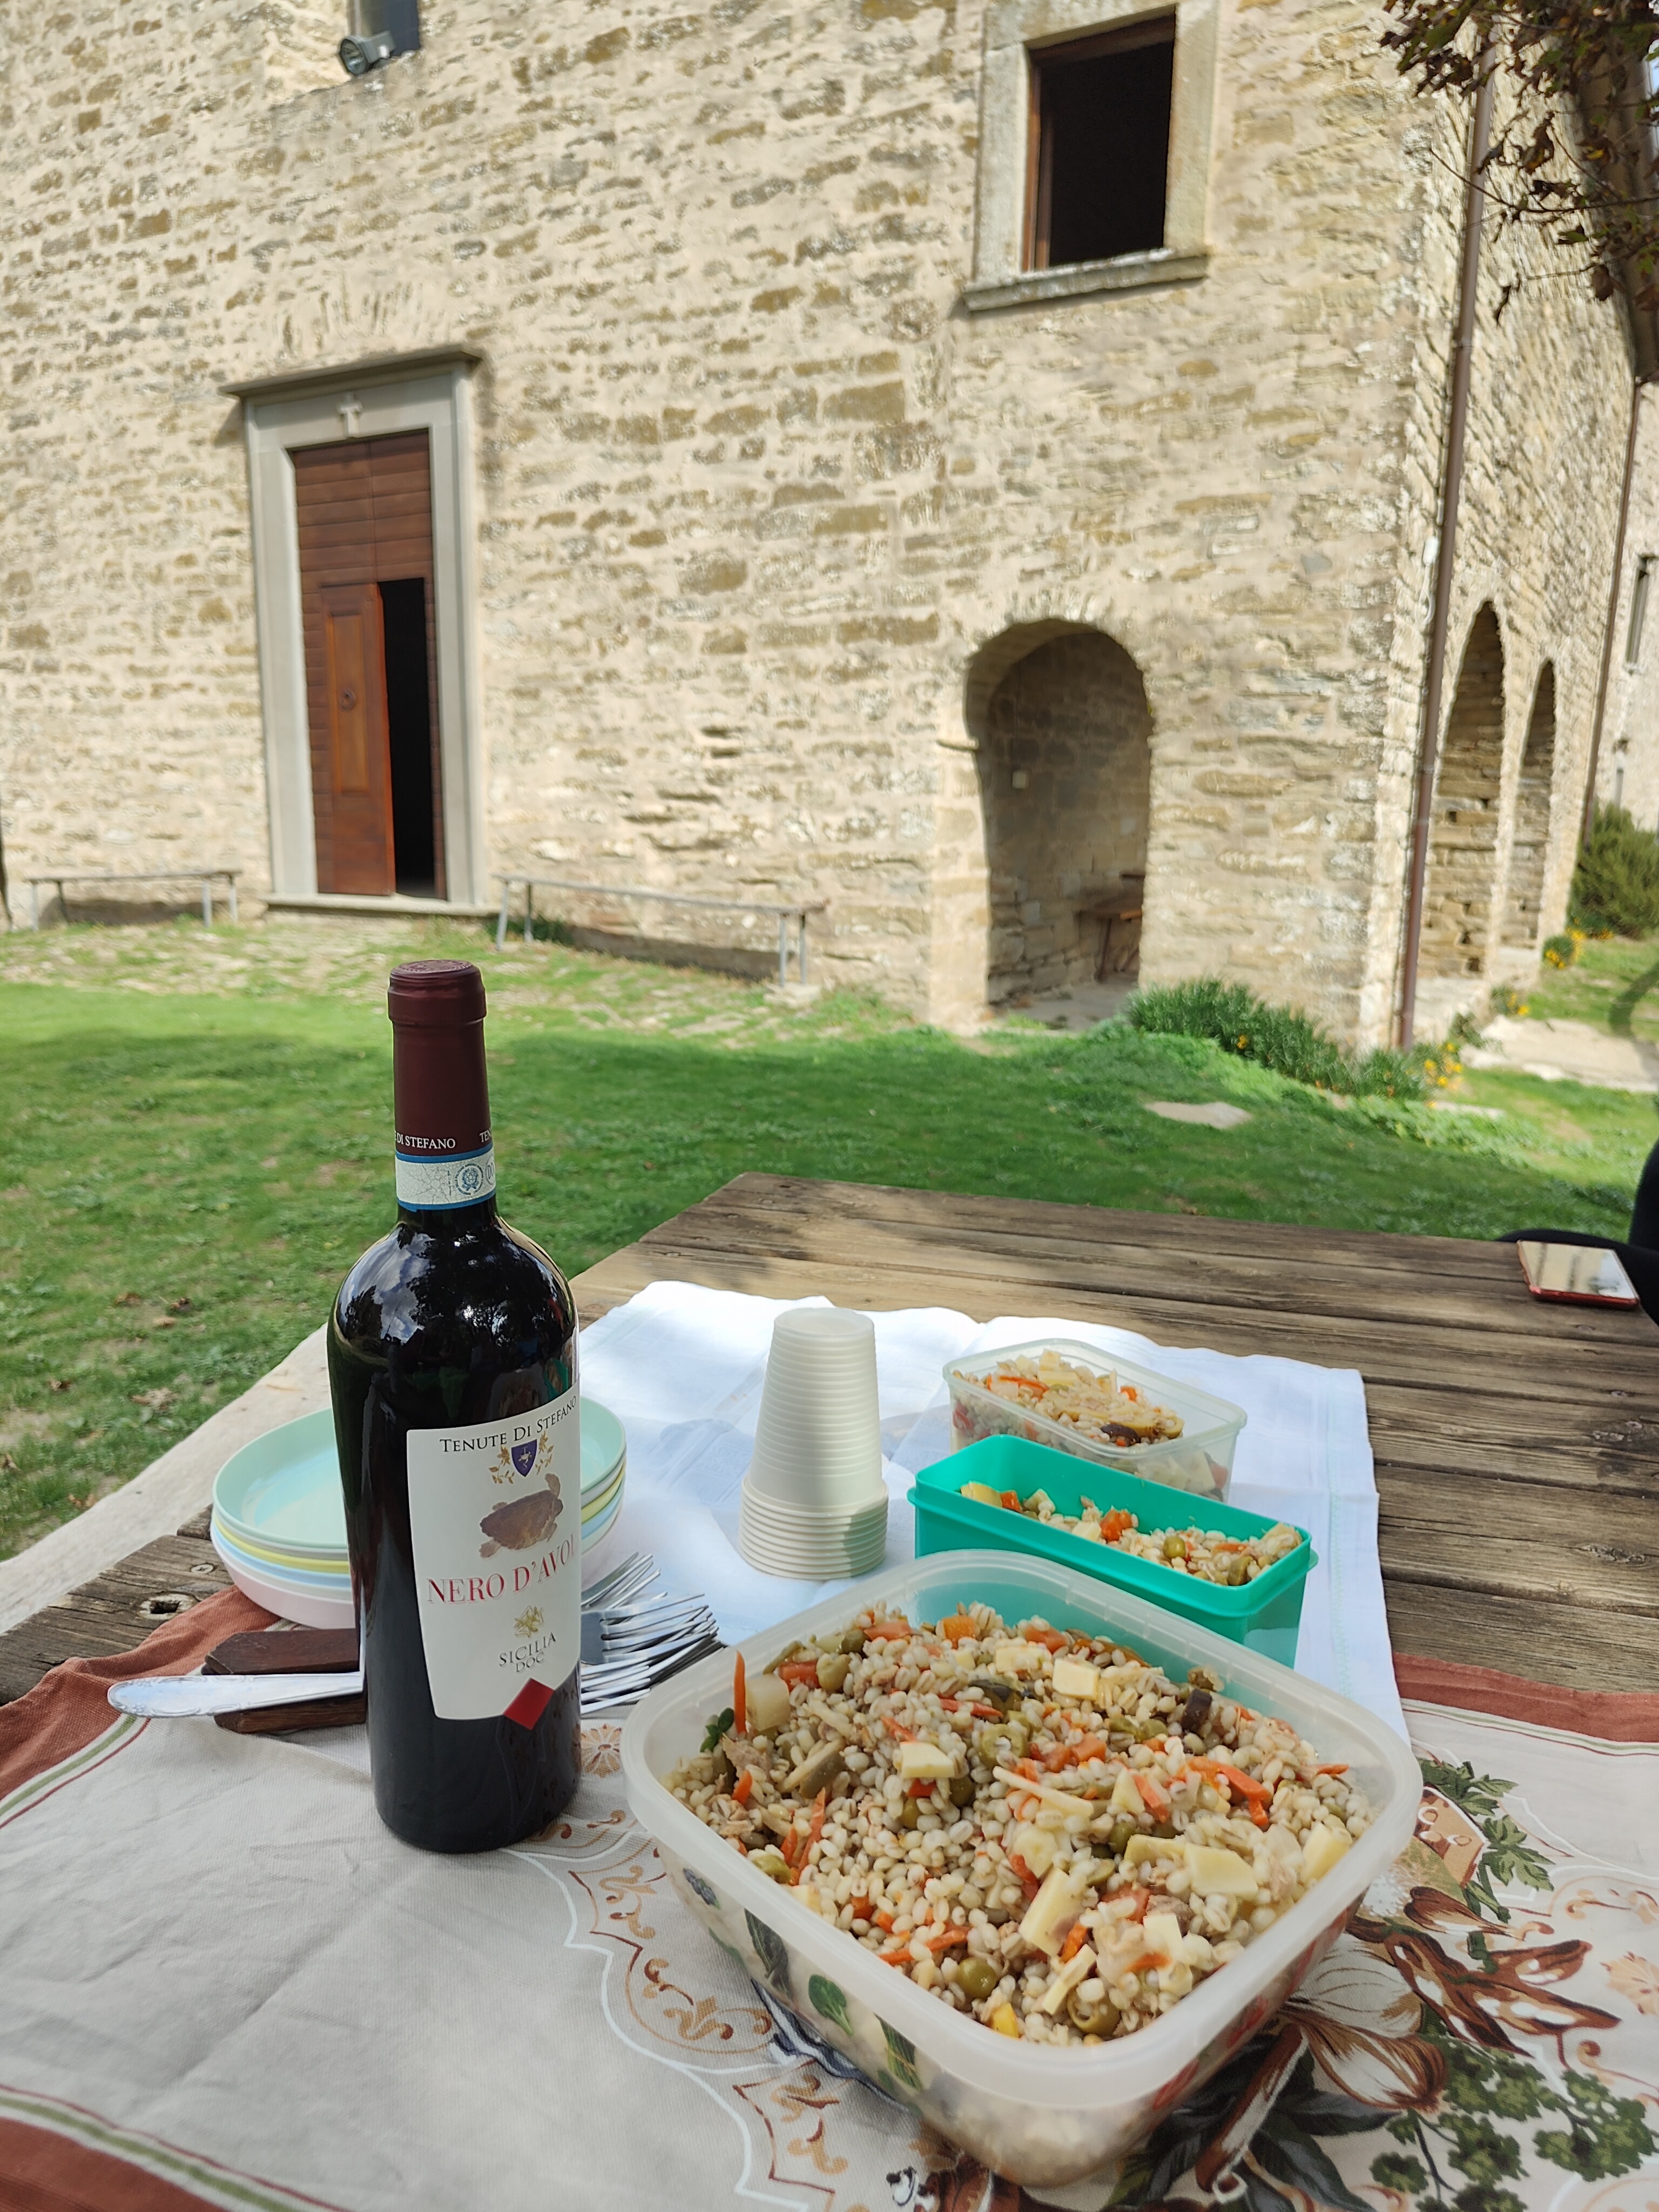 Dom z Kamienia blog, Toskania, warsztaty kulinarne, trekking